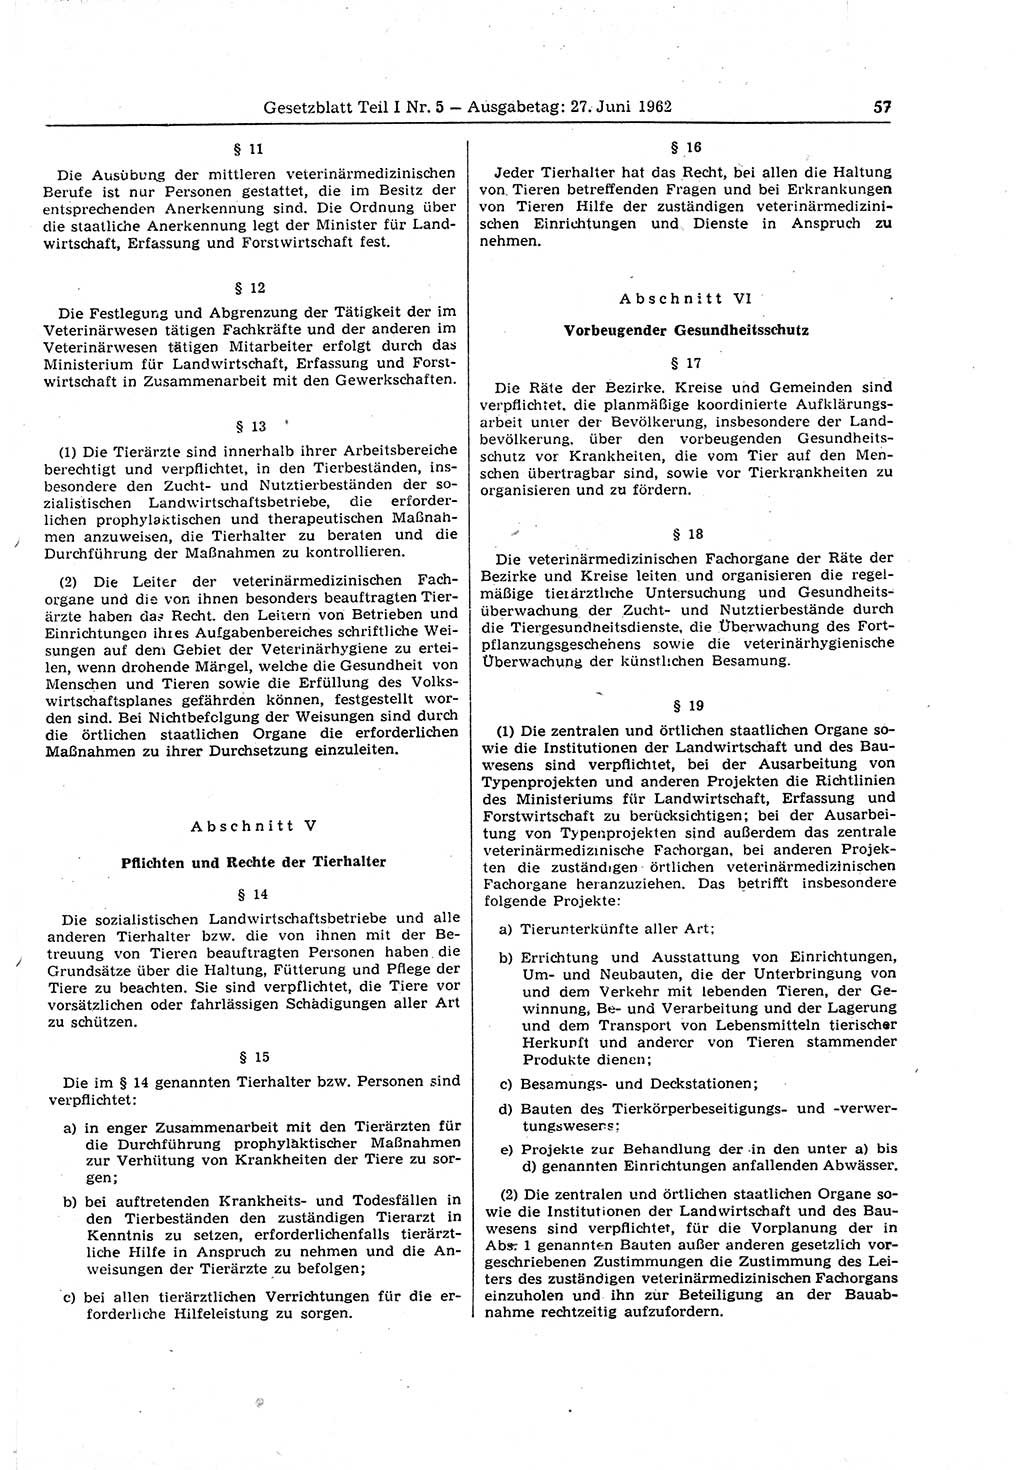 Gesetzblatt (GBl.) der Deutschen Demokratischen Republik (DDR) Teil Ⅰ 1962, Seite 57 (GBl. DDR Ⅰ 1962, S. 57)